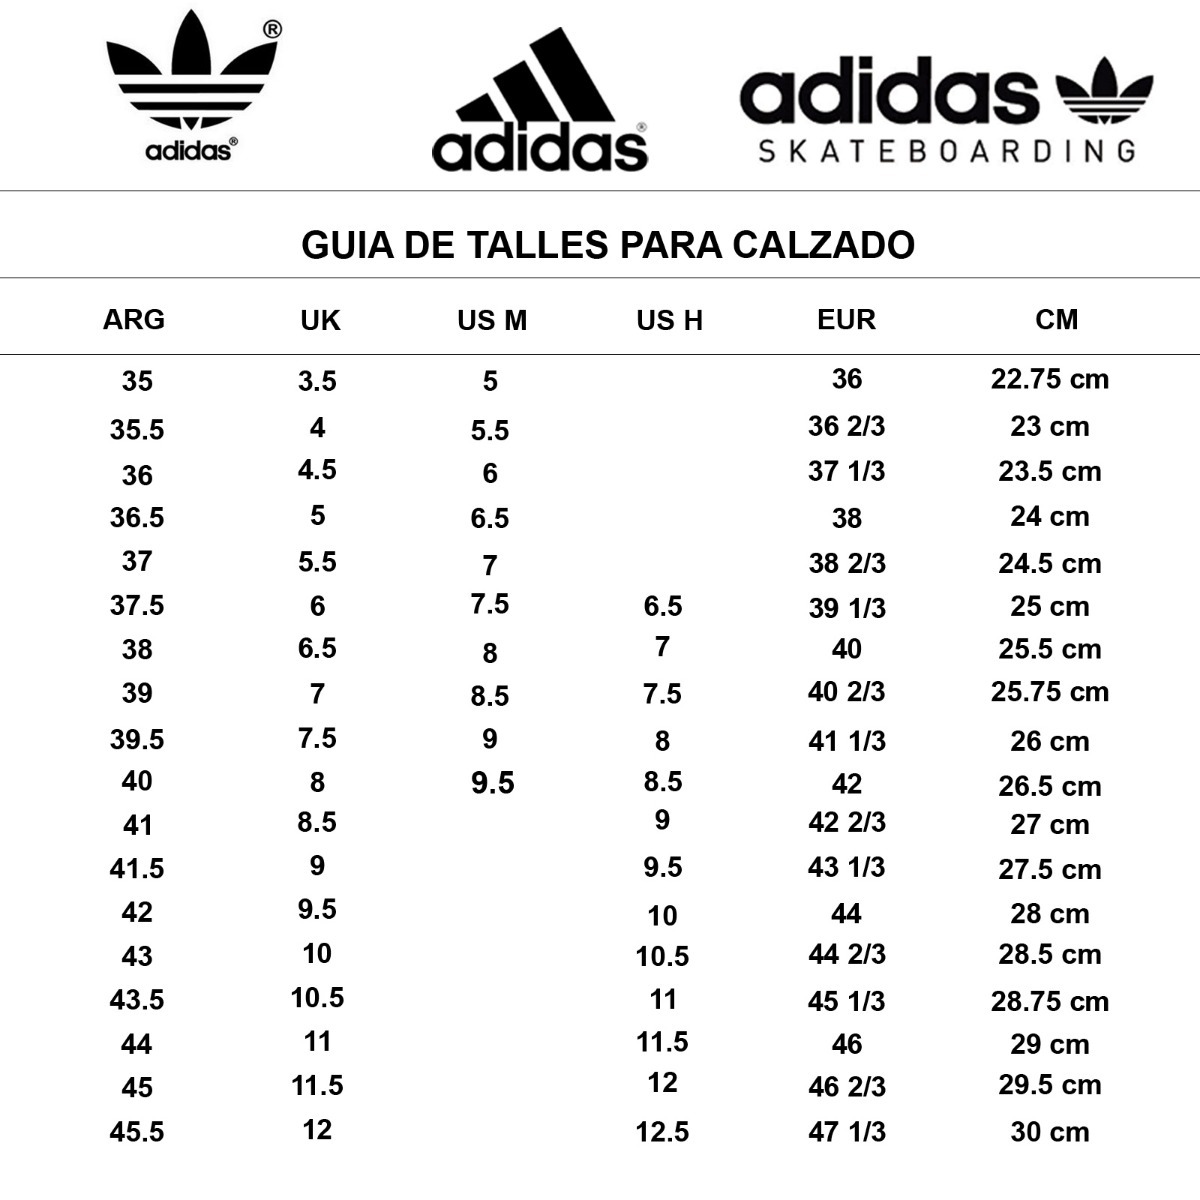 Adidas Peru - playgrowned.com